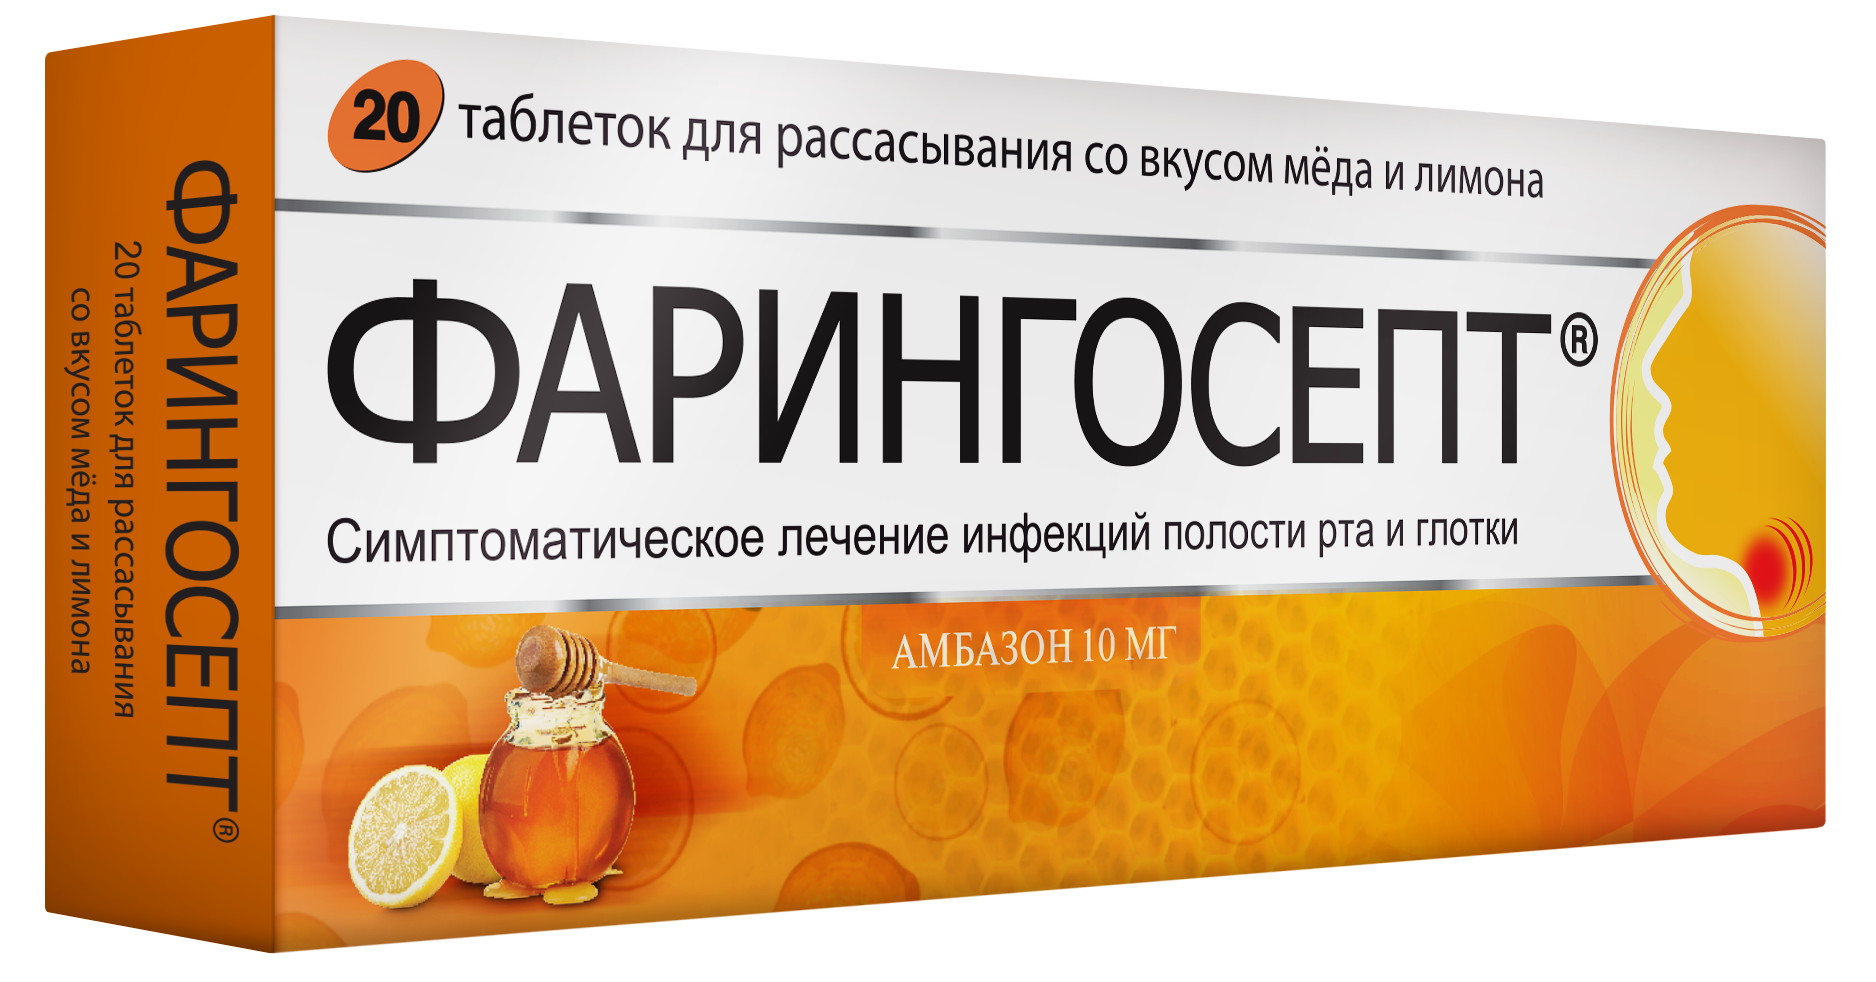 Фарингосепт, таблетки для рассасывания (мед-лимон) 10 мг, 20 шт. септолете тотал таблетки для рассасывания 4 мг 16 шт